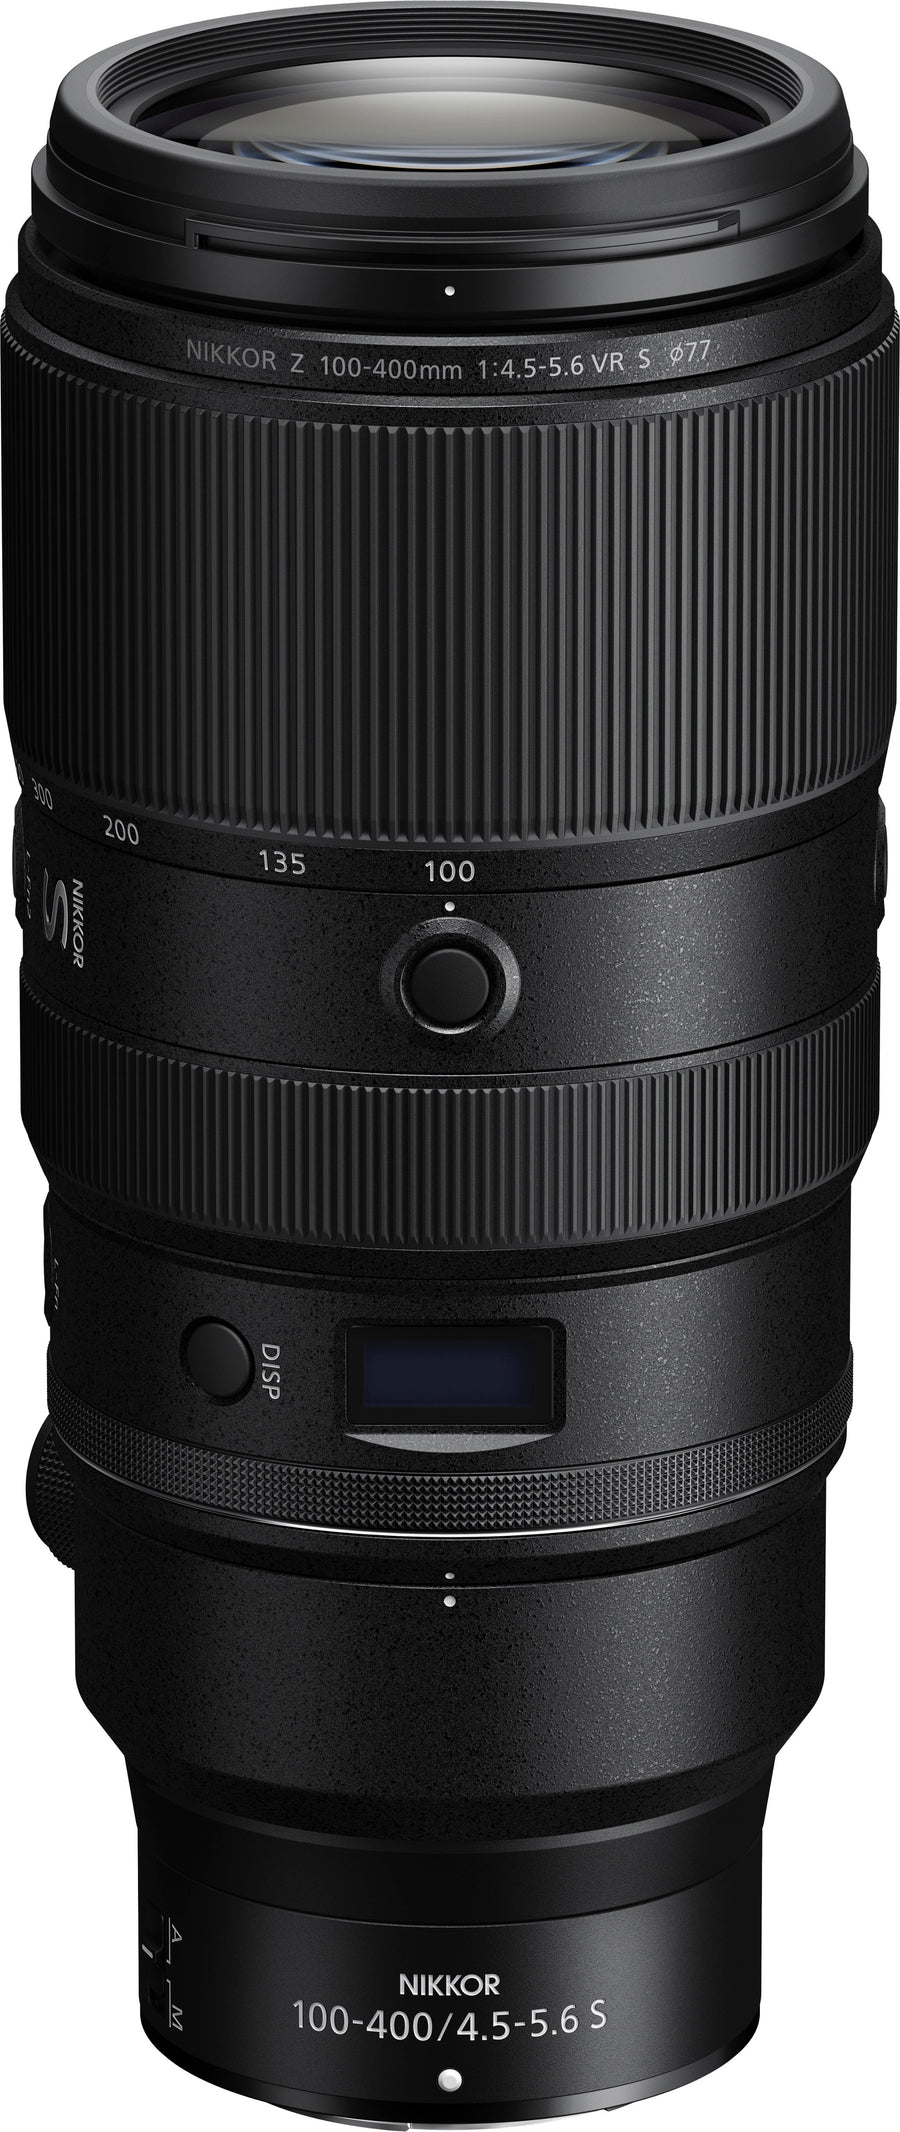 Nikon - NIKKOR Z 100-400mm f/4.5-5.6 VR S Super-Telephoto Lens for Z Series Mirrorless Cameras - Black_0